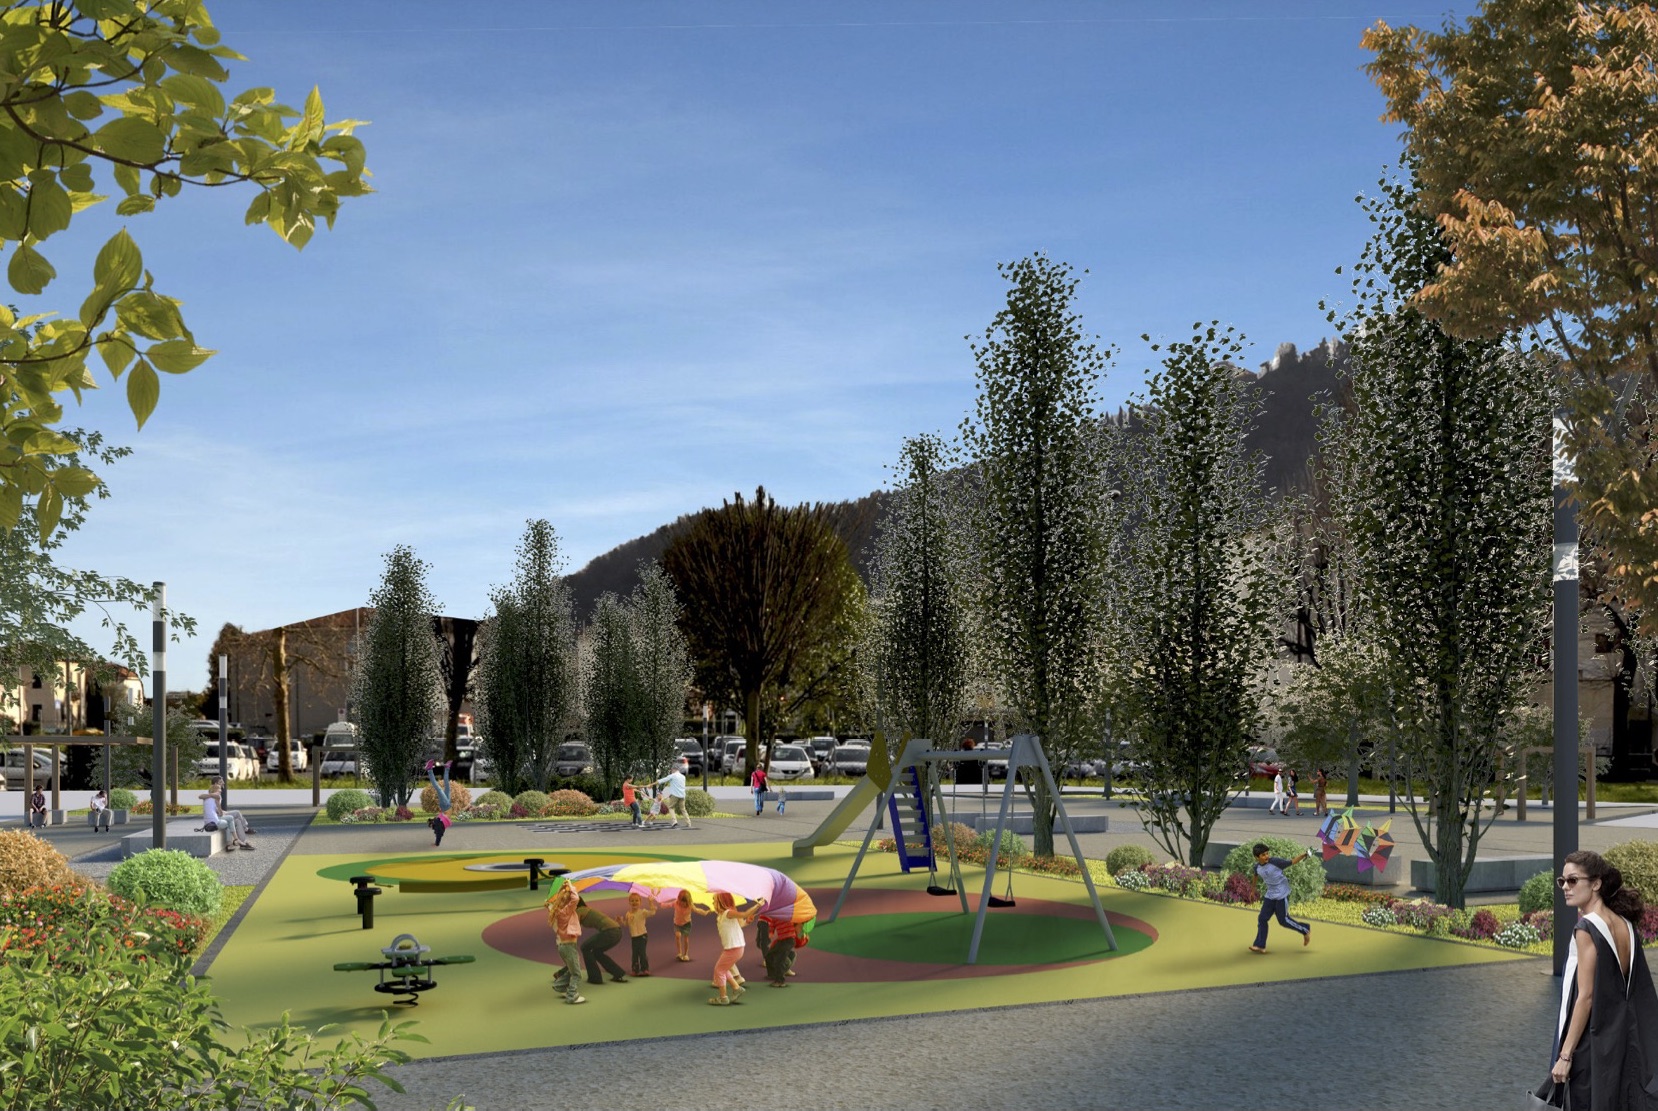 Come potrebbe diventare, il futuro parco urbano...